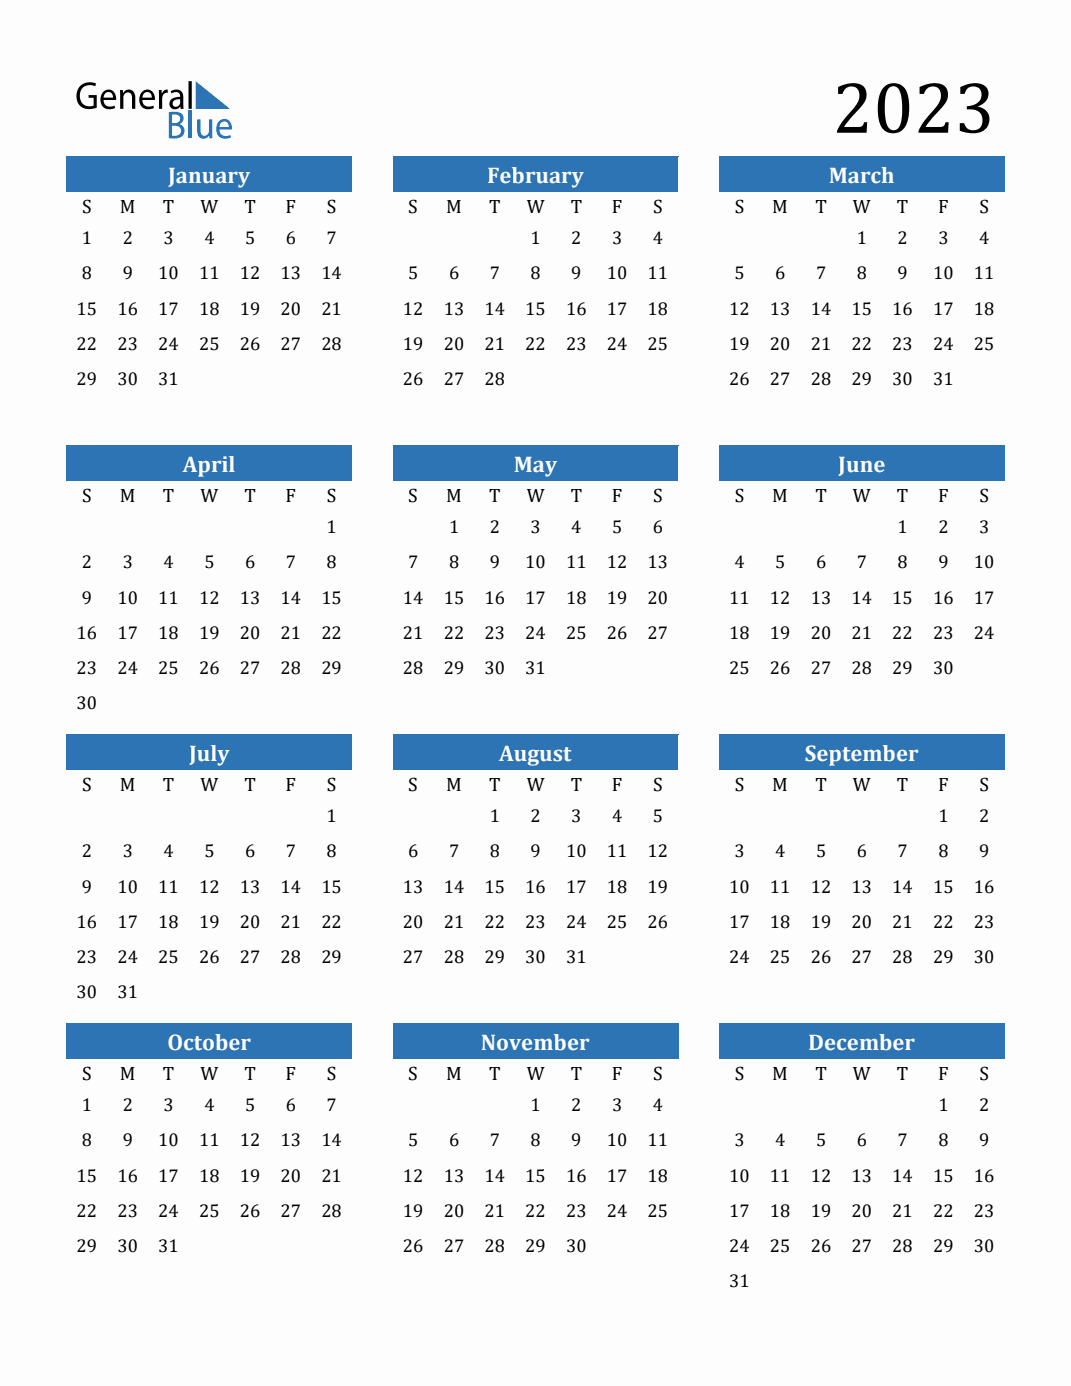 general-blue-calendar-2023-united-states-get-calendar-2023-update